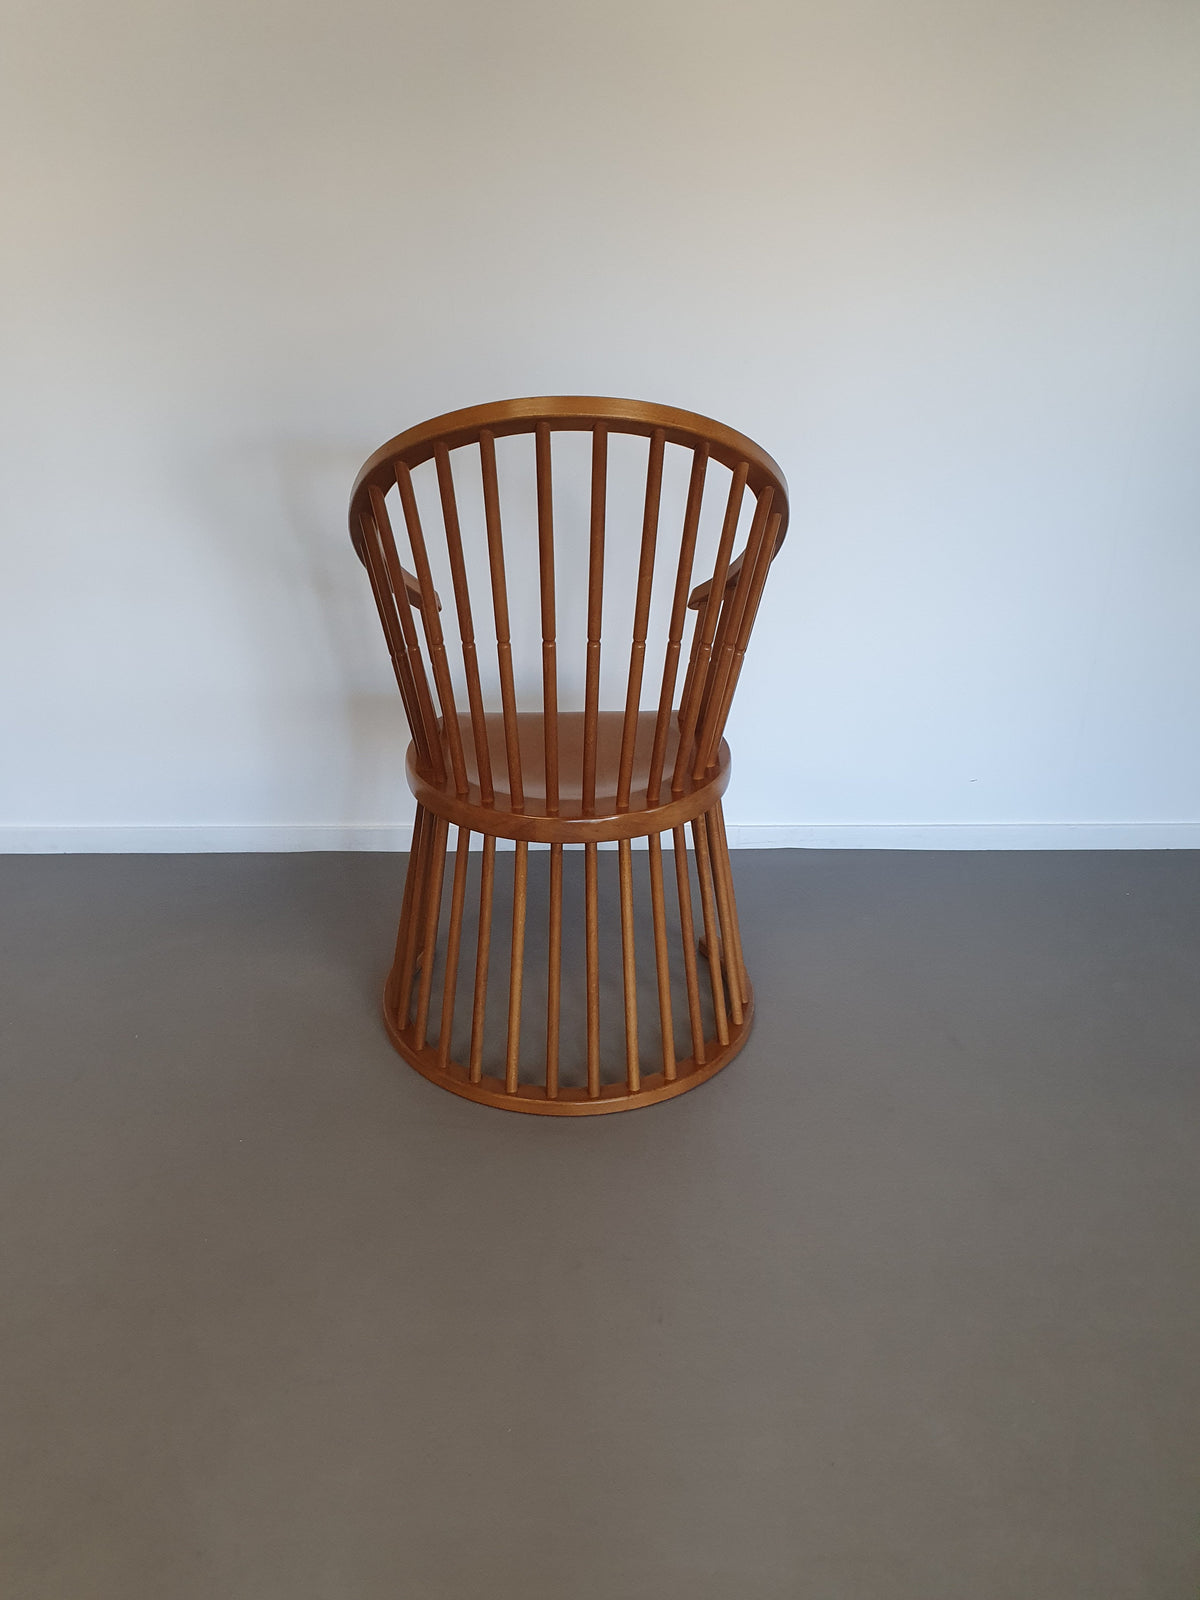 " Origineel uit de Oirschotse meubelmakerij "
Beautiful rare spindle chair 1970